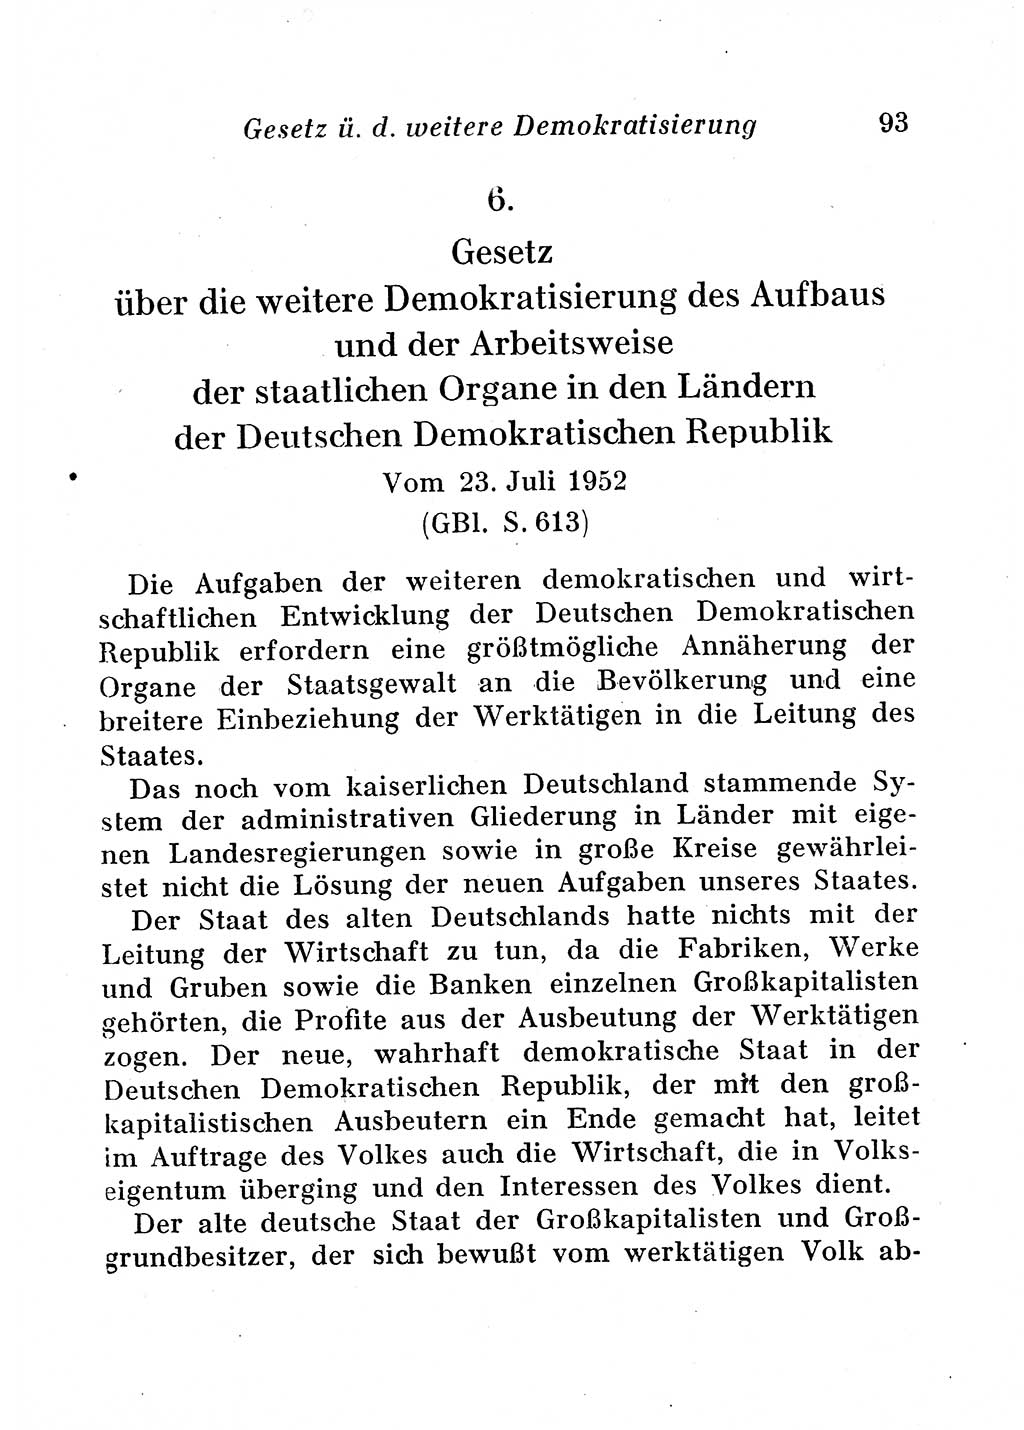 Staats- und verwaltungsrechtliche Gesetze der Deutschen Demokratischen Republik (DDR) 1958, Seite 93 (StVerwR Ges. DDR 1958, S. 93)